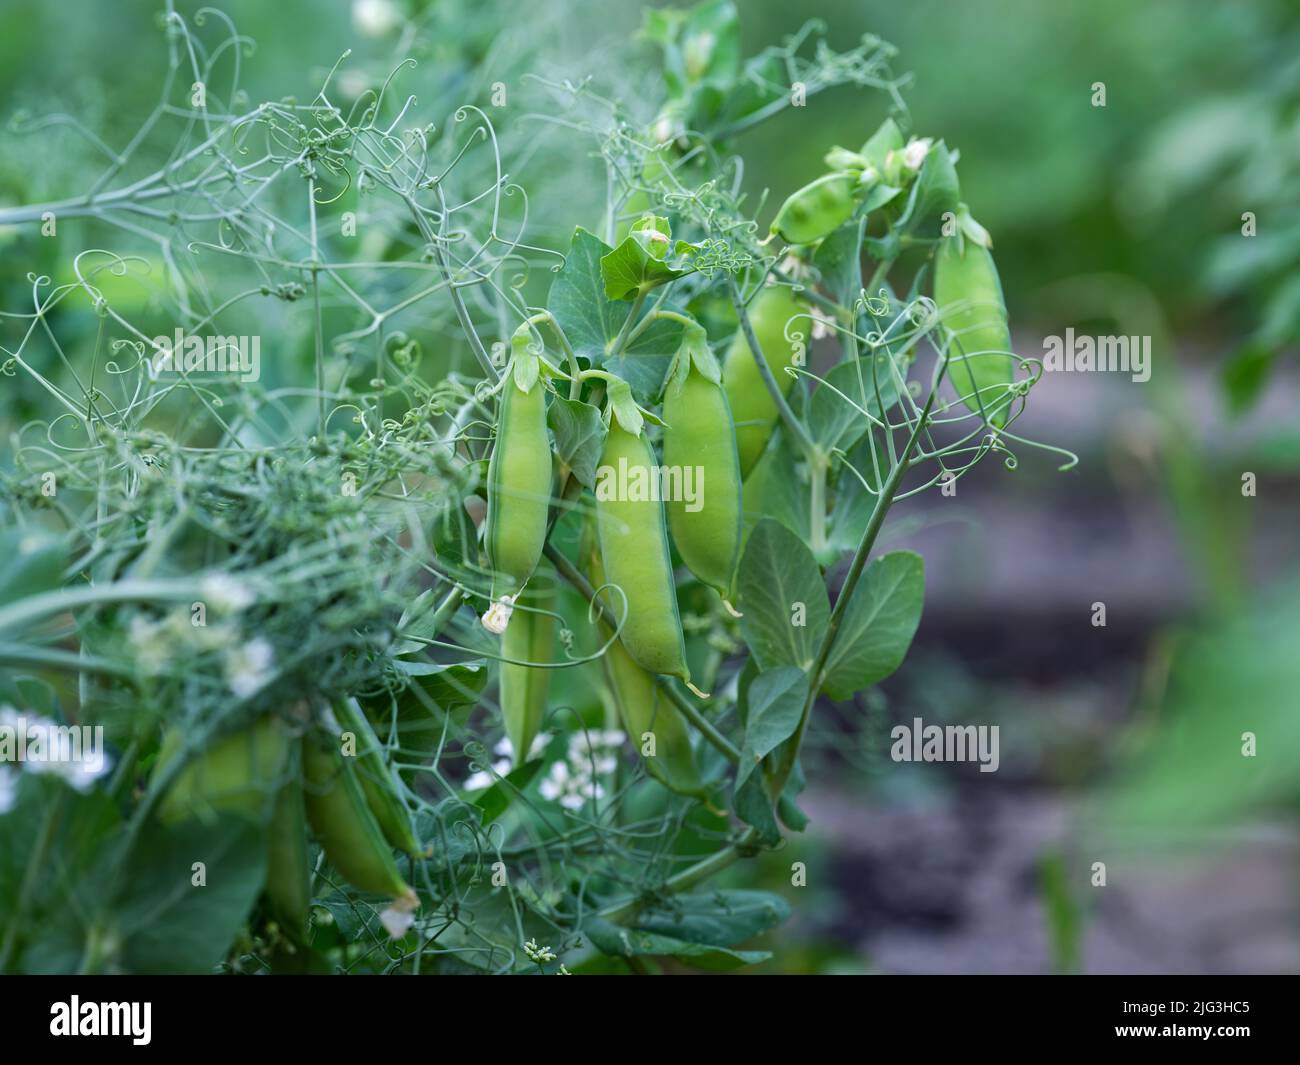 Vainas de guisantes verdes en una planta de guisantes. Primer plano. Foto de stock